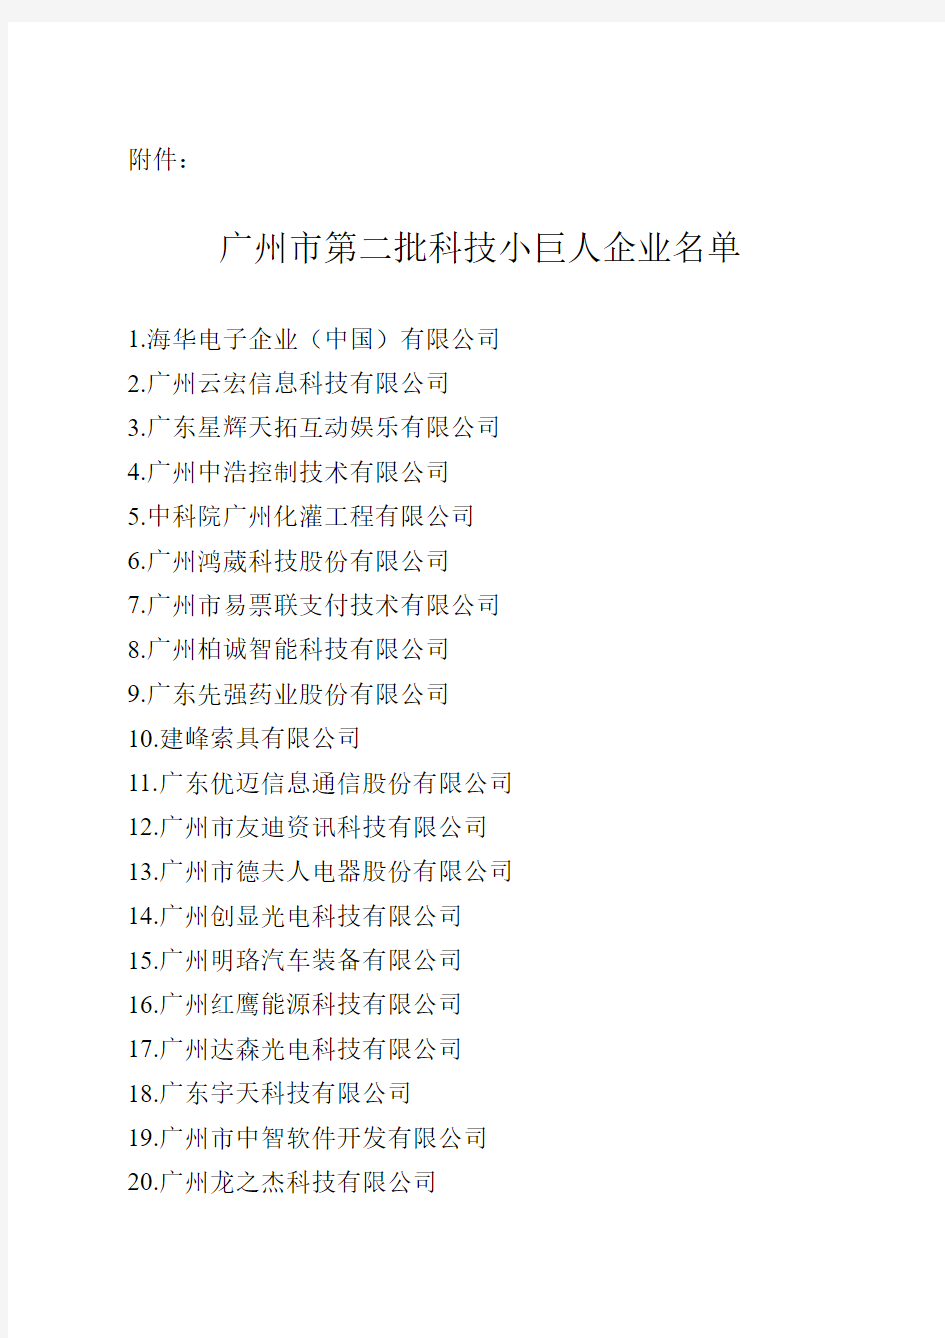 广州市第二批科技小巨人企业名单